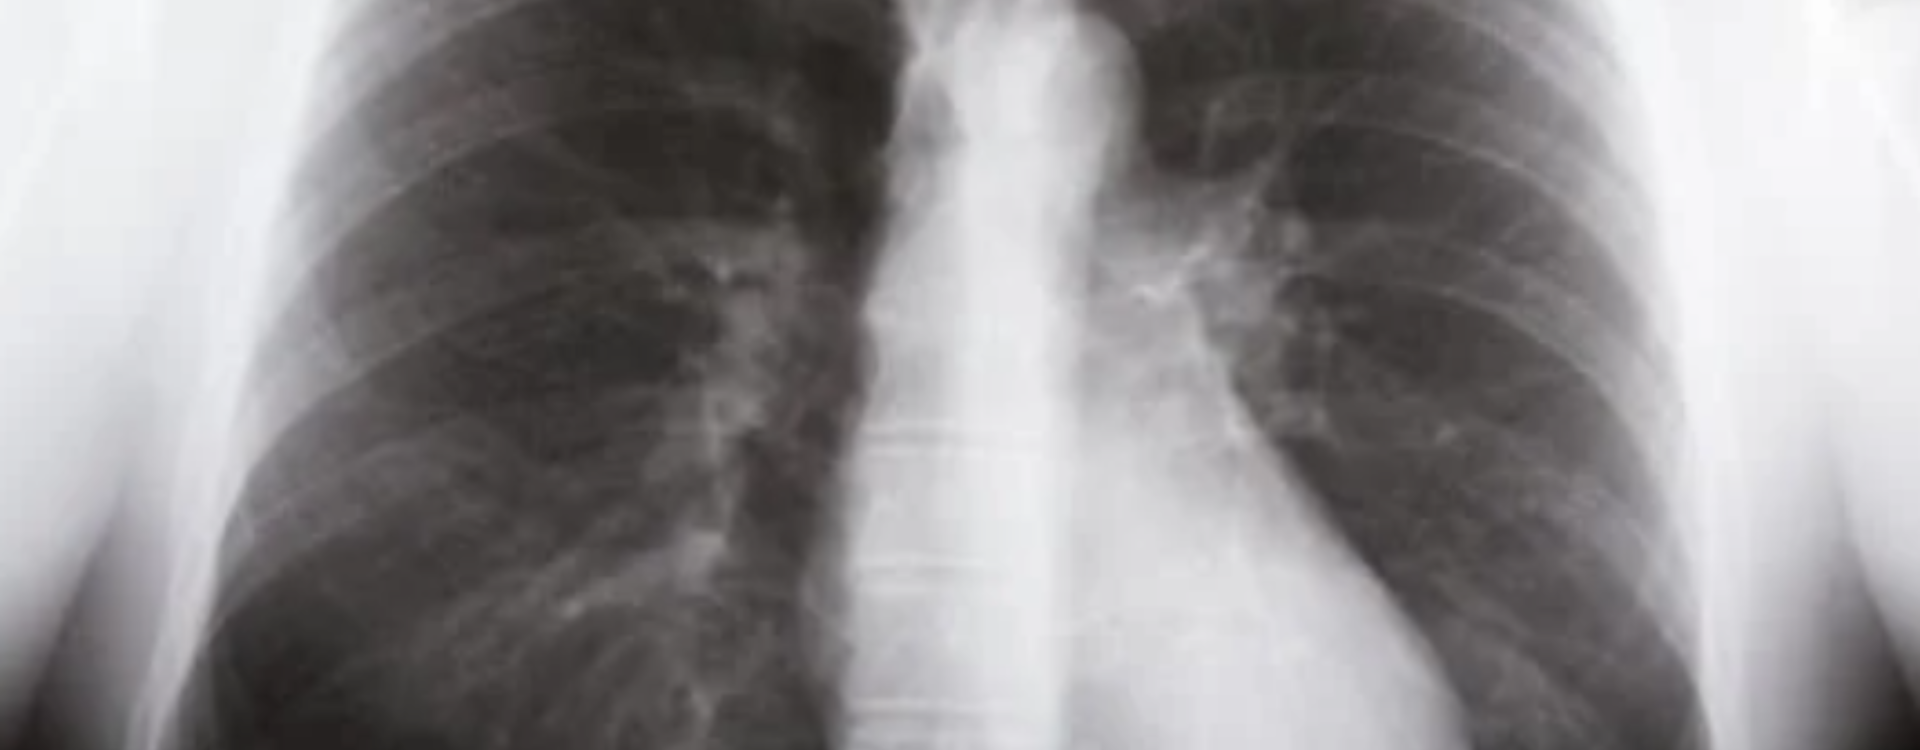 Nebuliazator NebuCare Max w walce z chorobami układu oddechowego